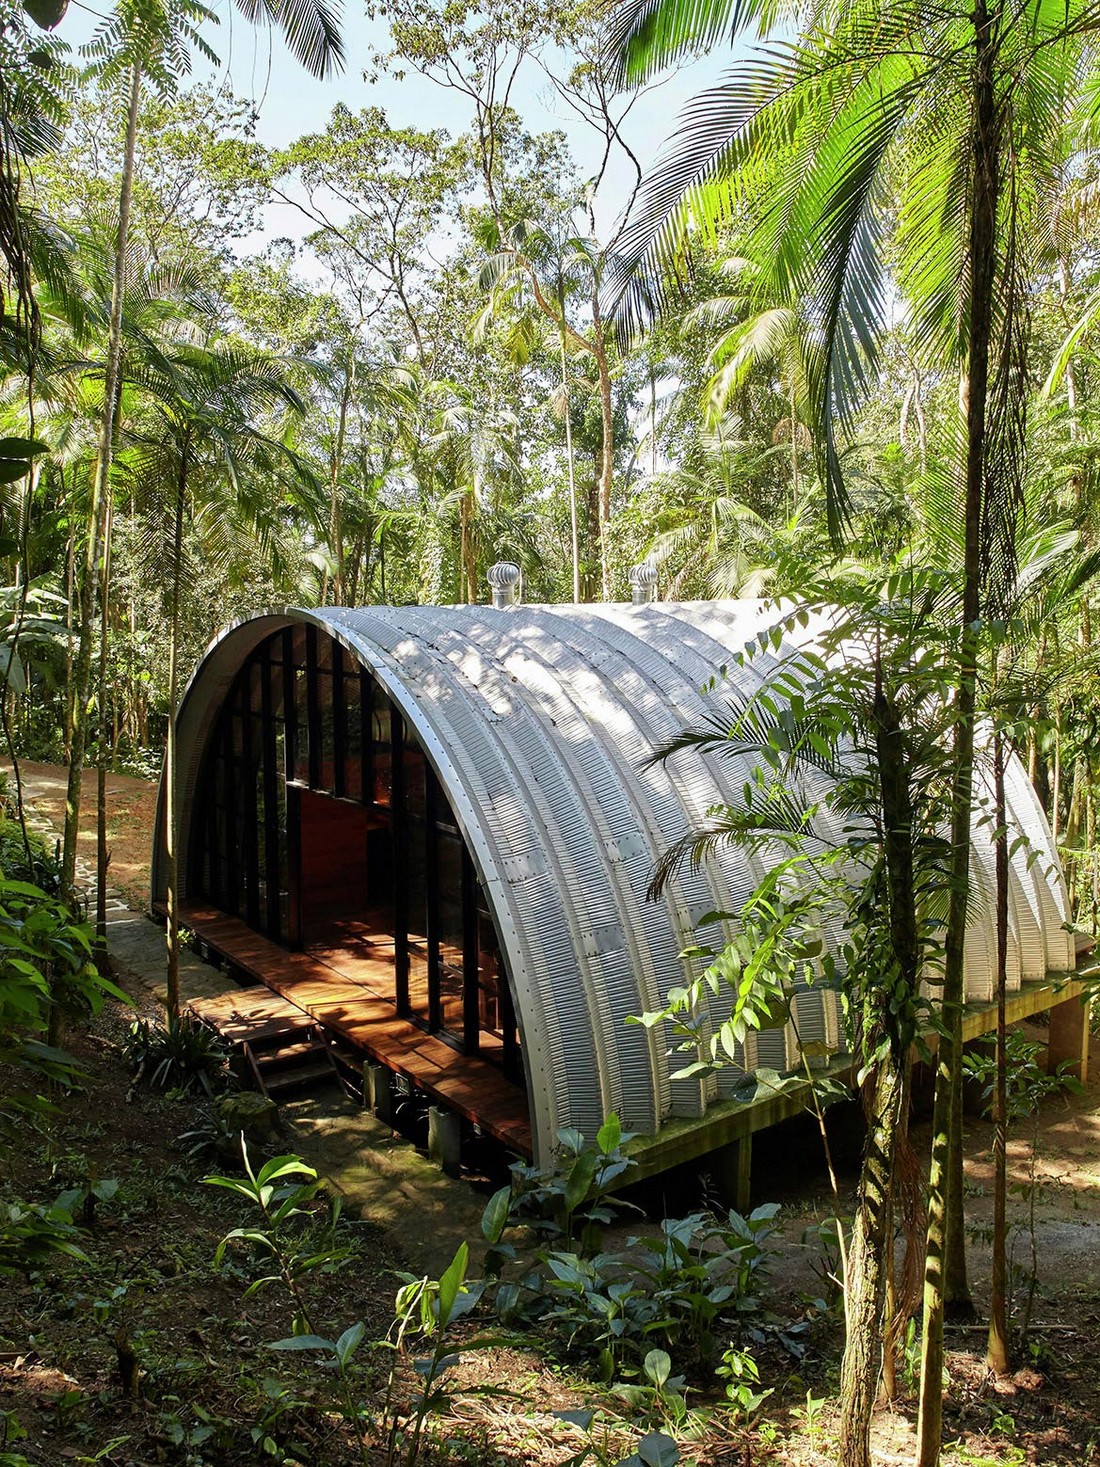 Модульный арочный дом в тропическом лесу Бразилии проекта, Бразилии, месте, конструкции, может, собраны, задачи, легко, строительство, людей, стены, которая, могут, экологически, использование, предусмотрено, чистых, отделке, природных, материалов